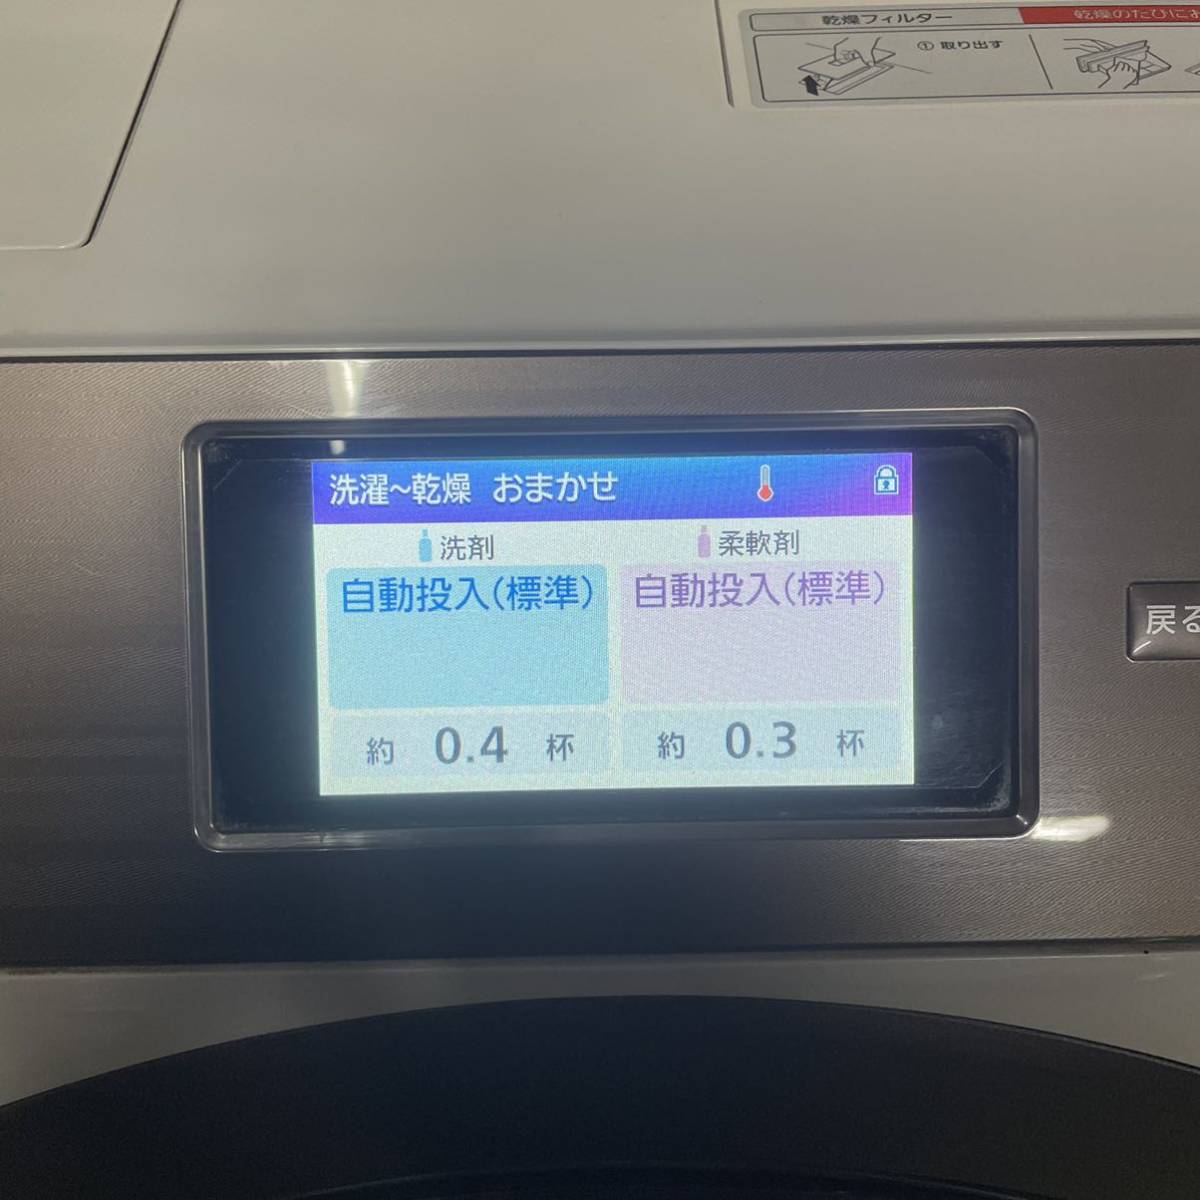 Panasonic パナソニック NA-VX9900R 2019年製 ドラム式洗濯乾燥機 み 